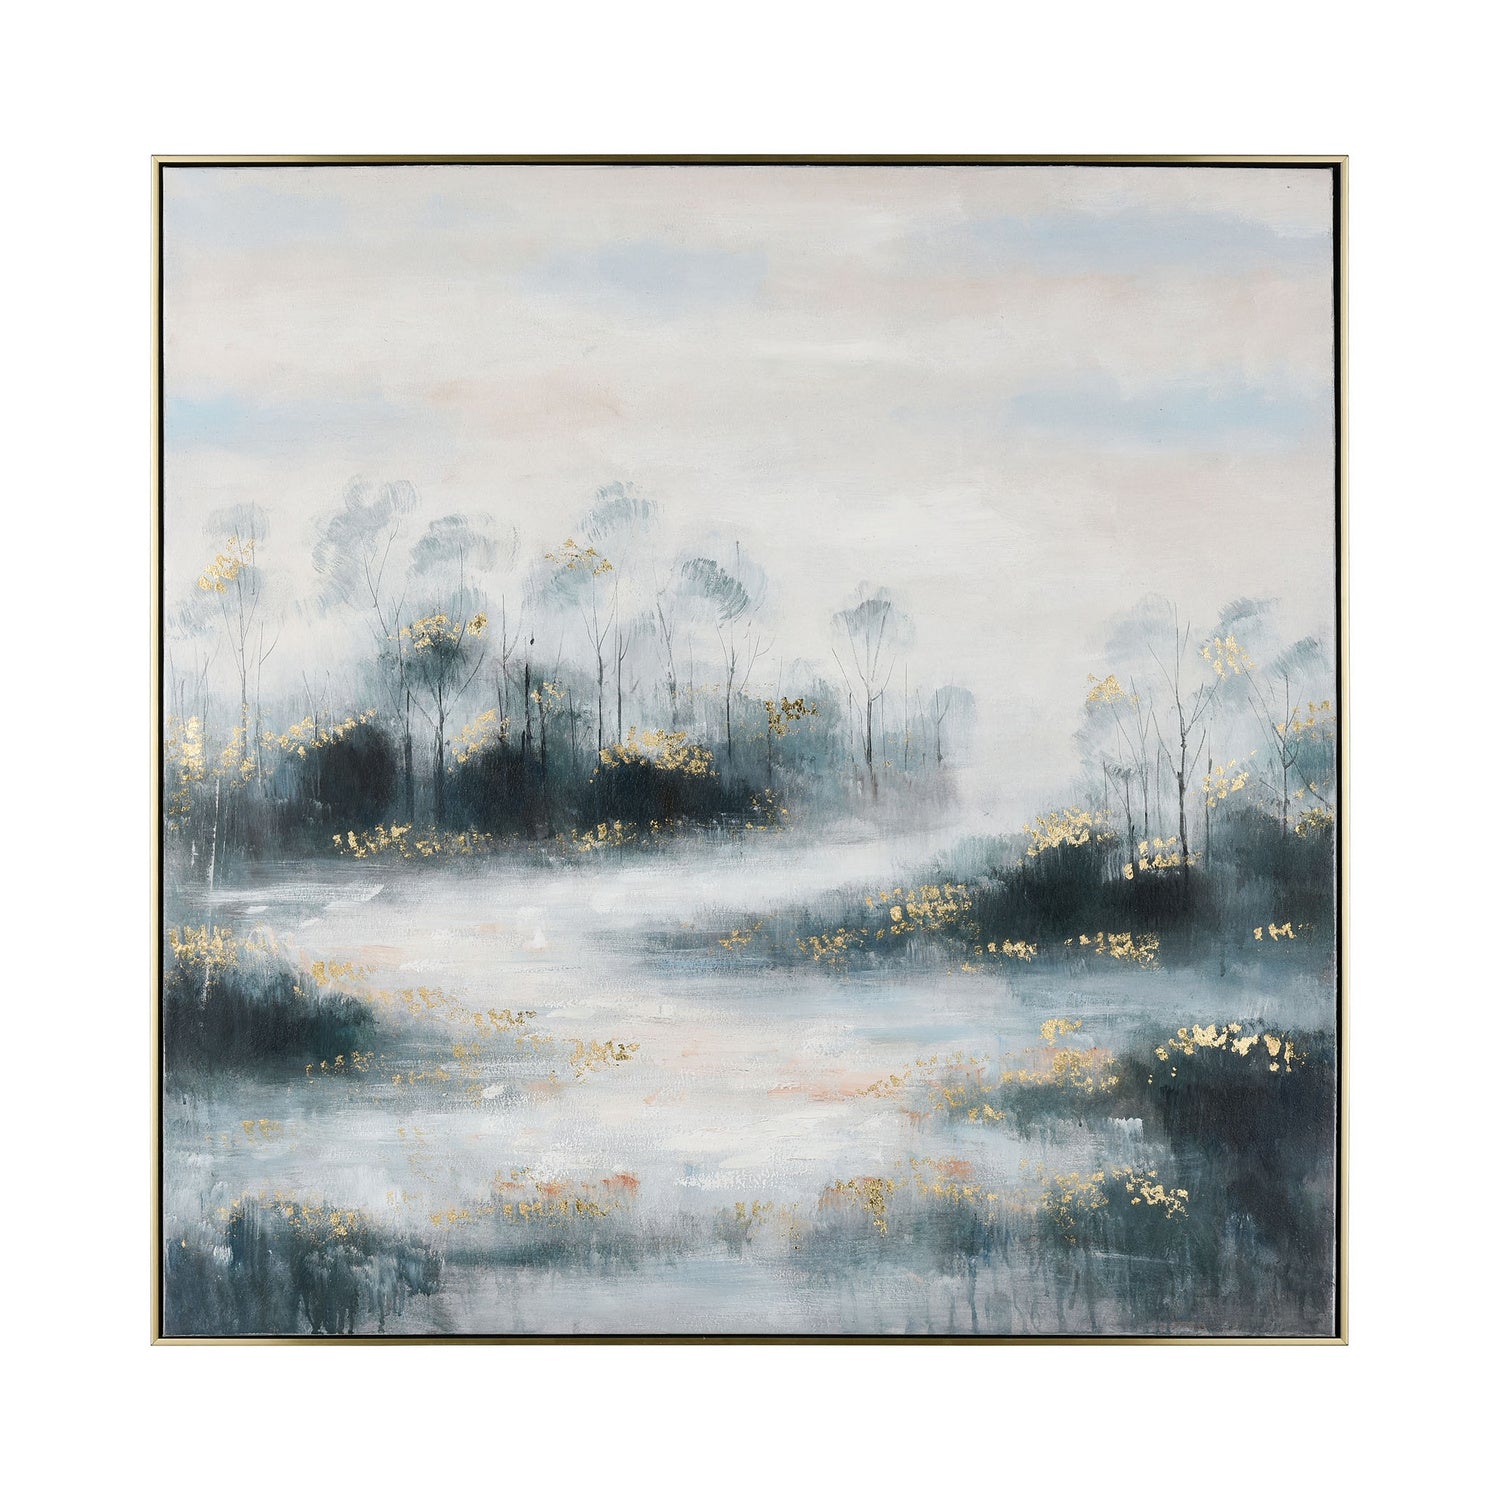 ELK Home - S0016-8161 - Wall Art - River Mist - Light Blue